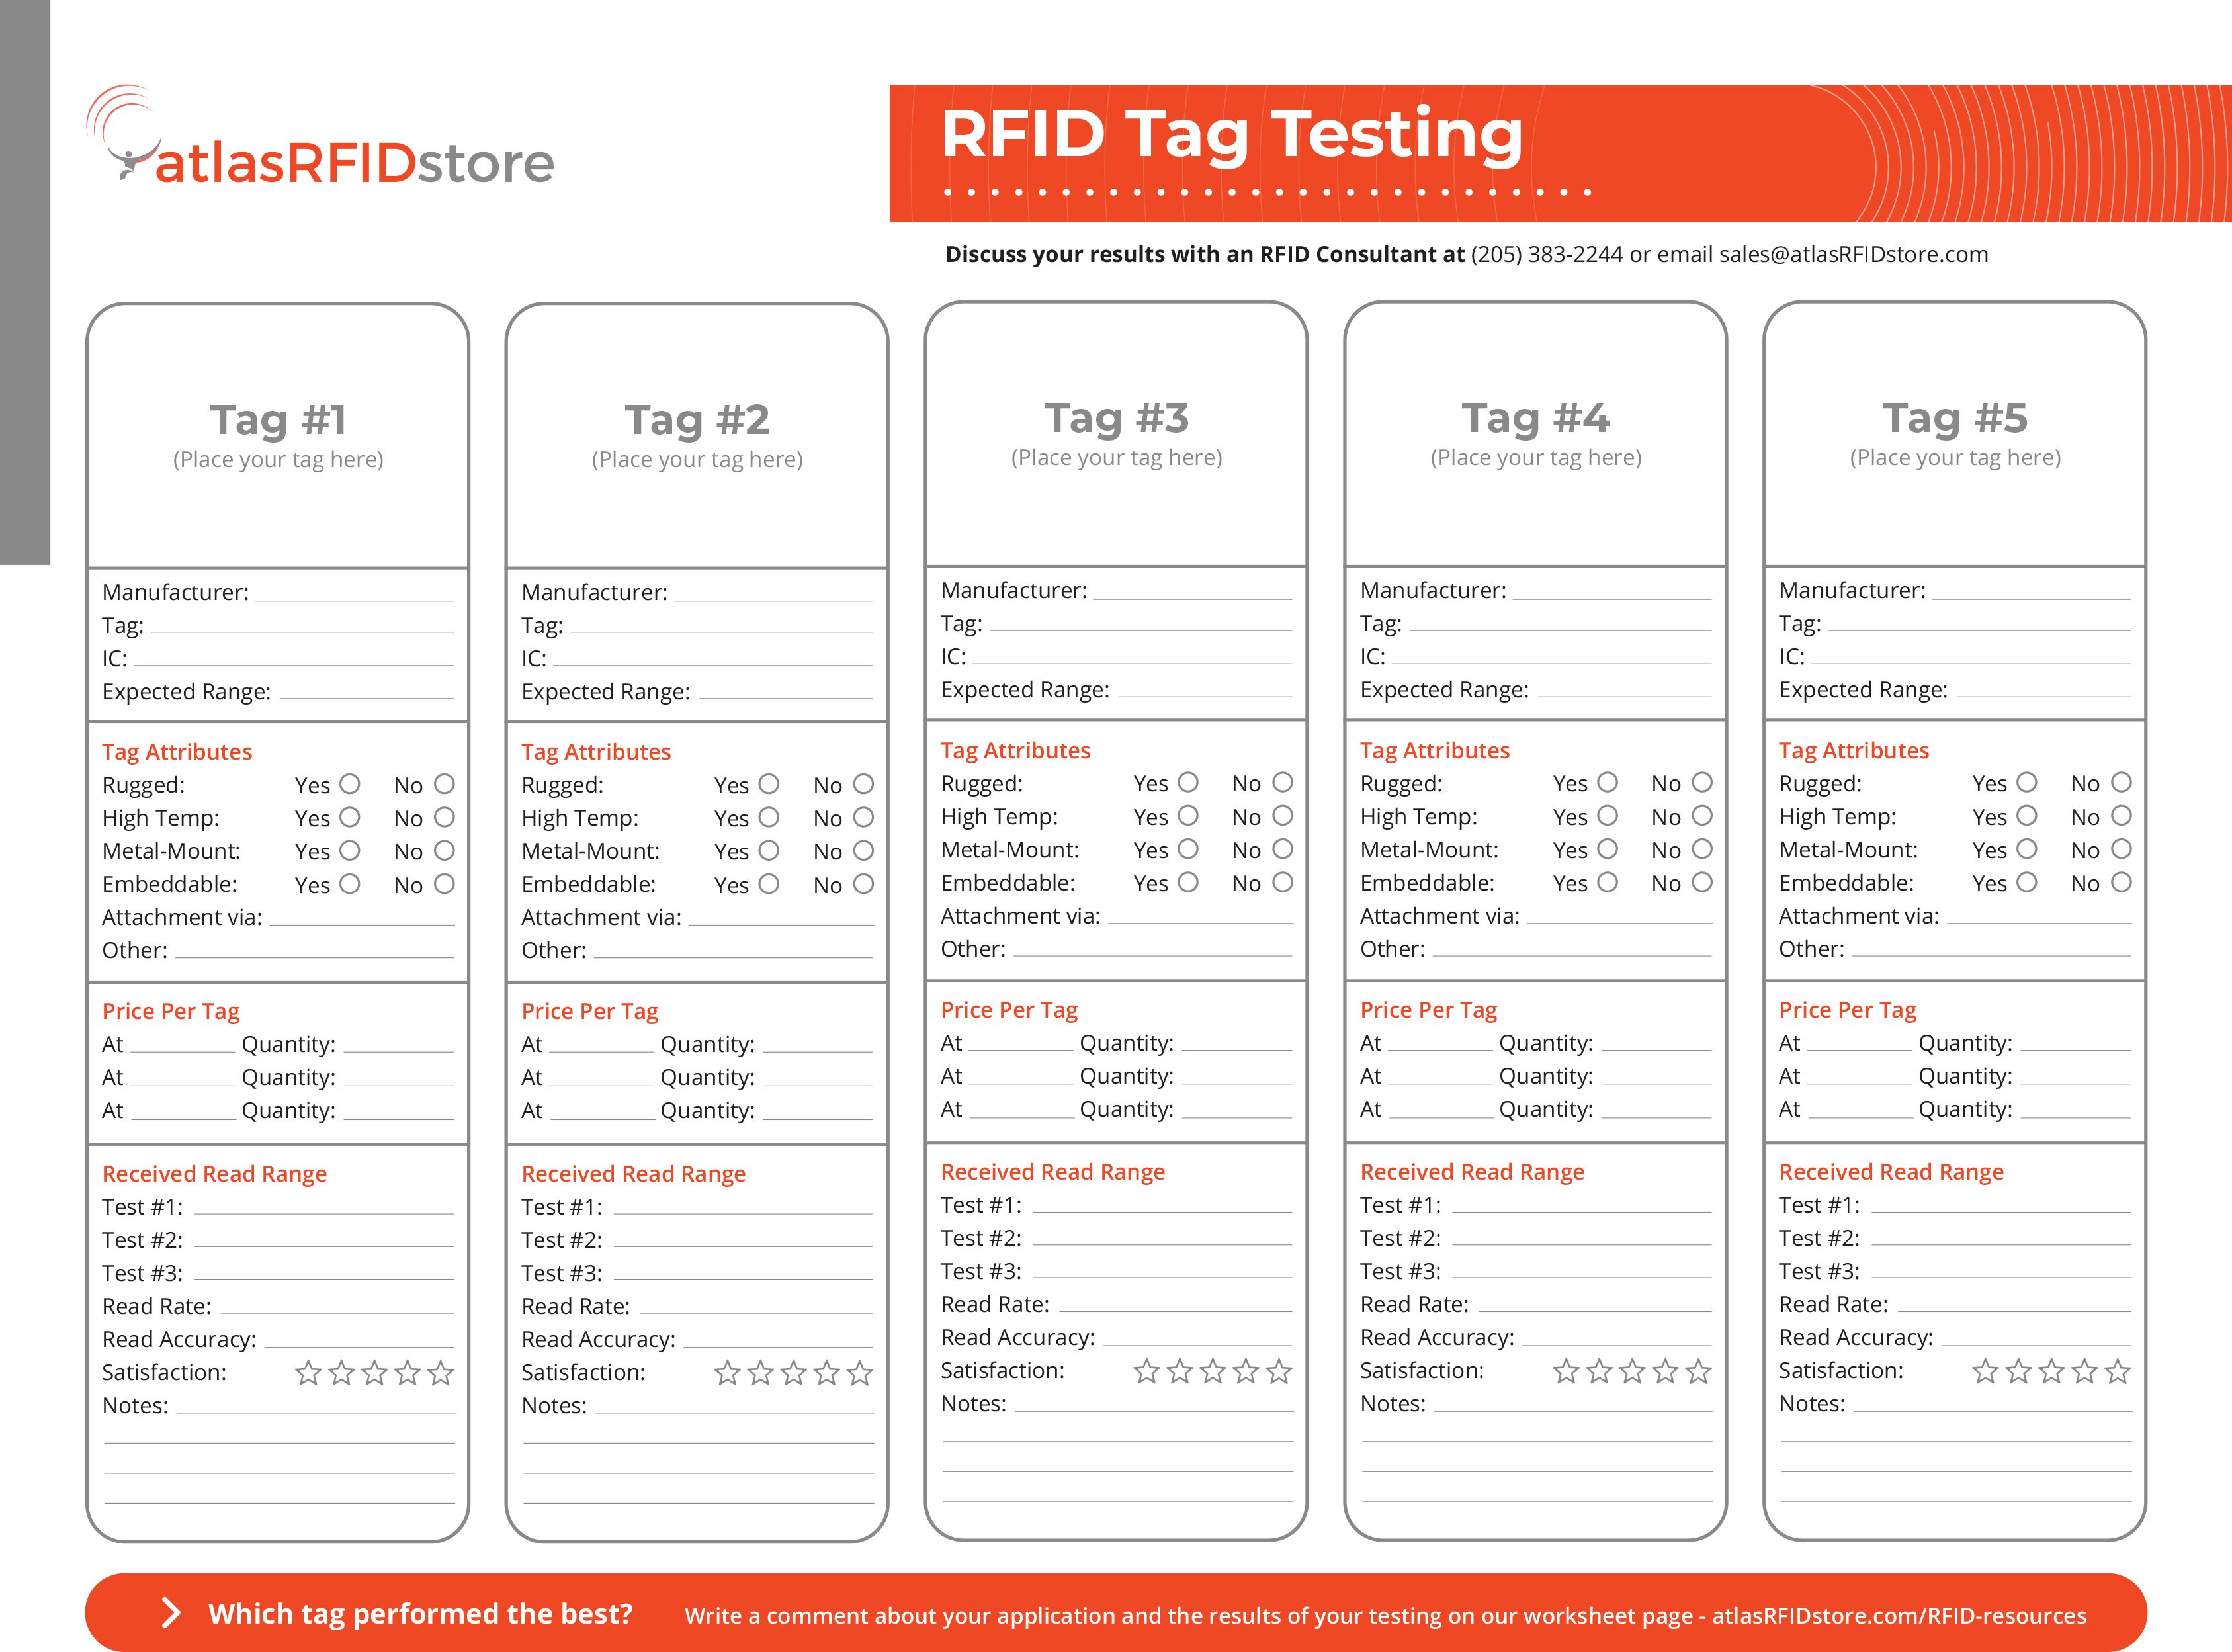 RFID Tag Testing Sheet